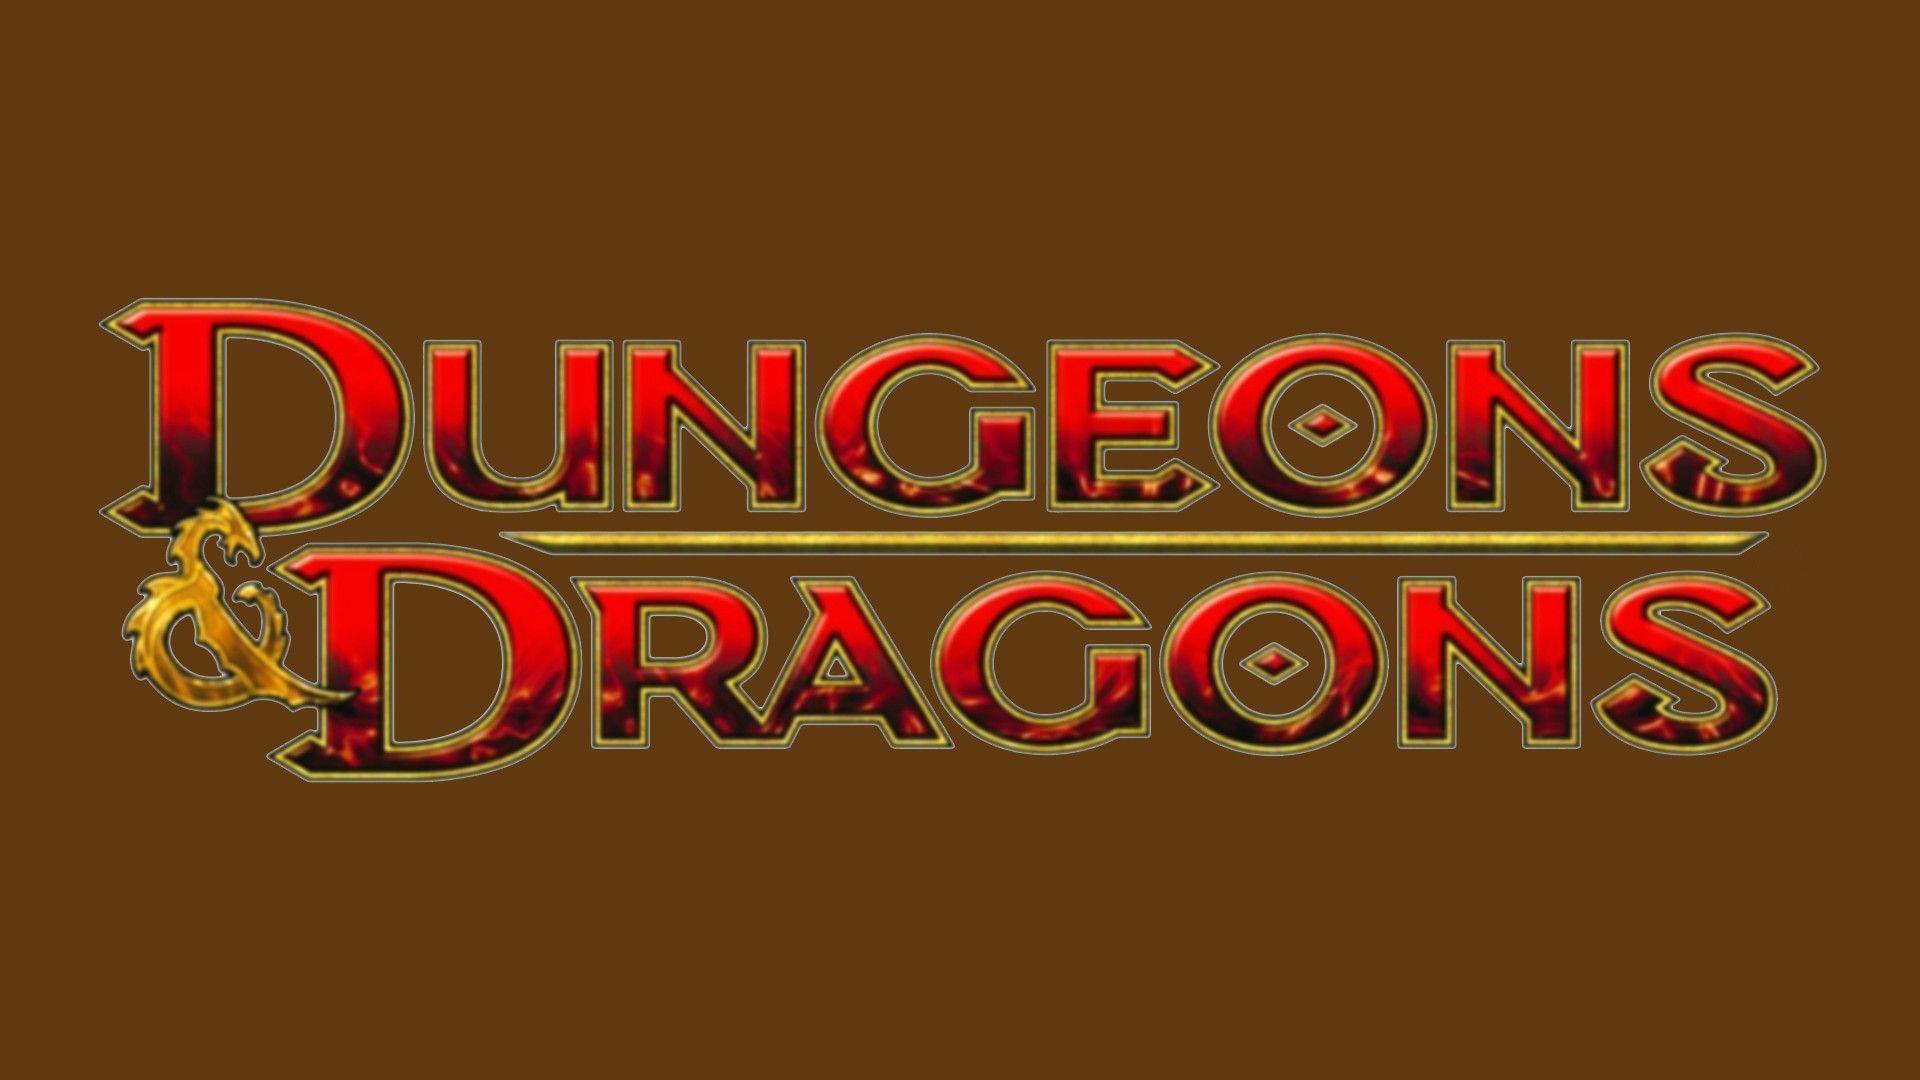 Dungeons & Dragons Computer Wallpapers, Desktop Backgrounds